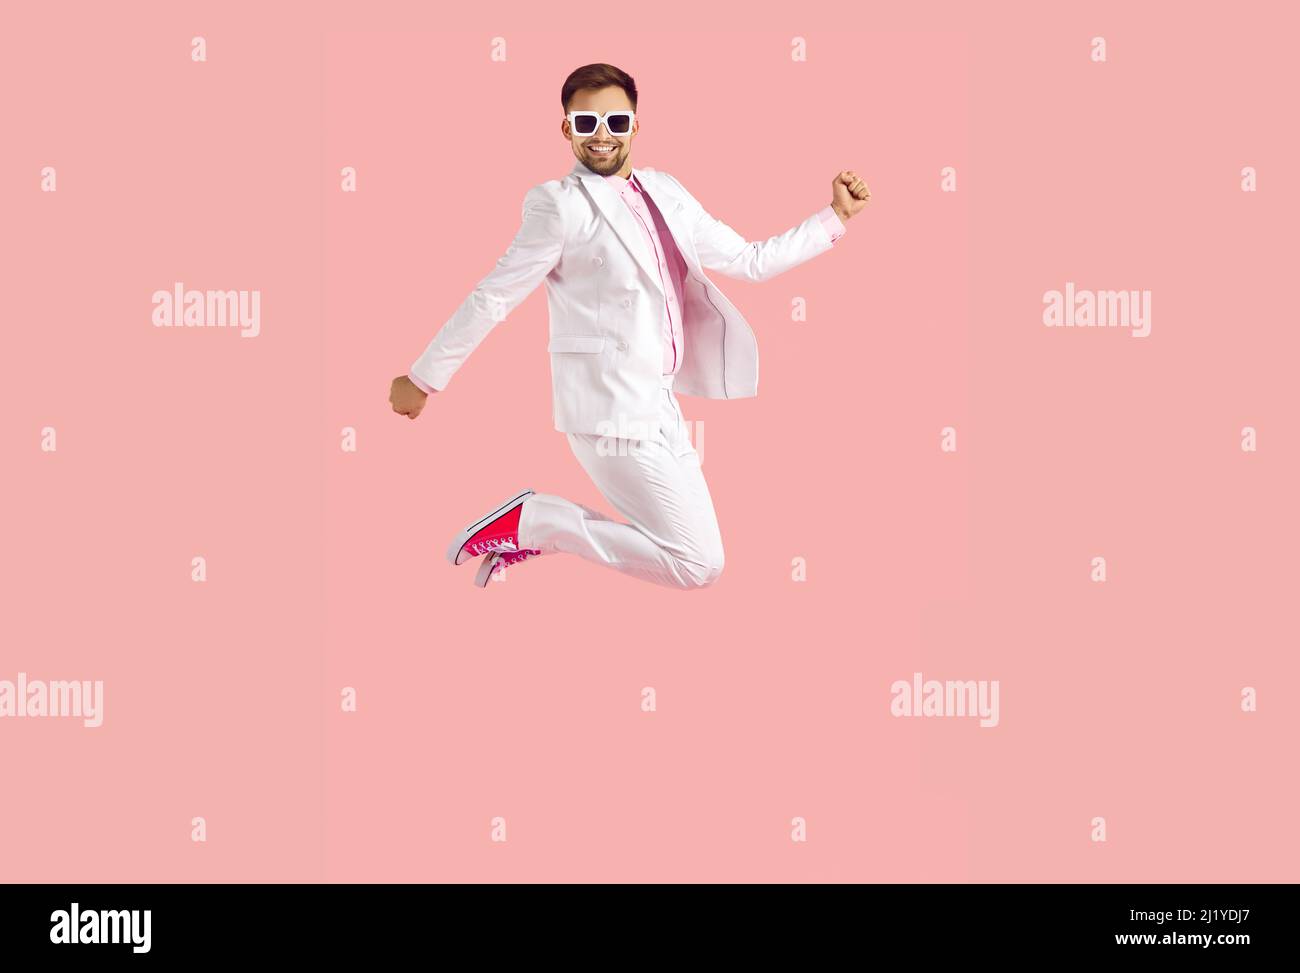 Allegro divertente giovane uomo in abito bianco salta alto isolato su sfondo rosa pastello. Foto Stock